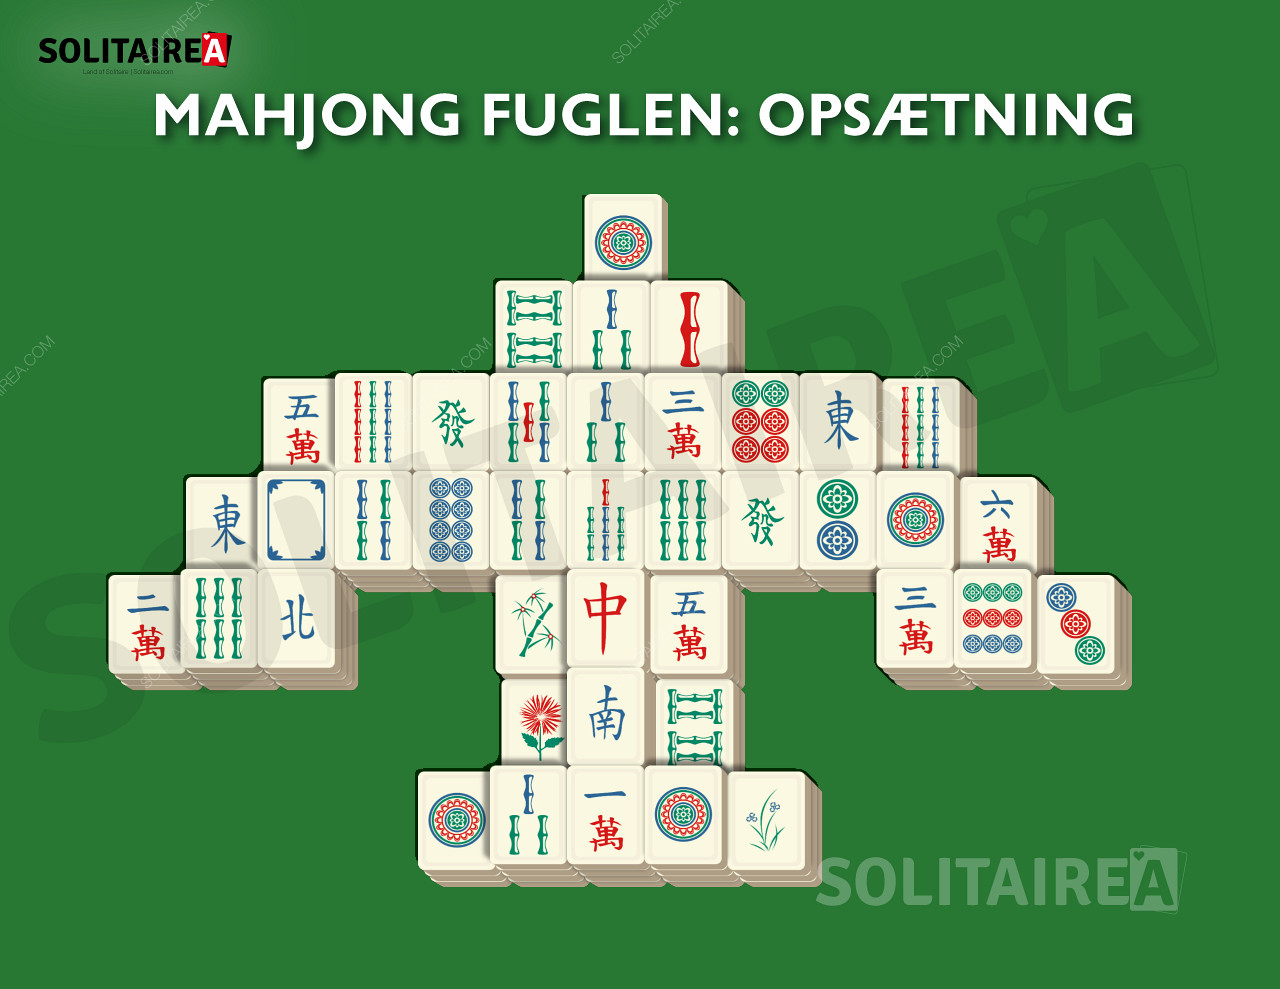 Mahjong Fuglen opsætning og strategi